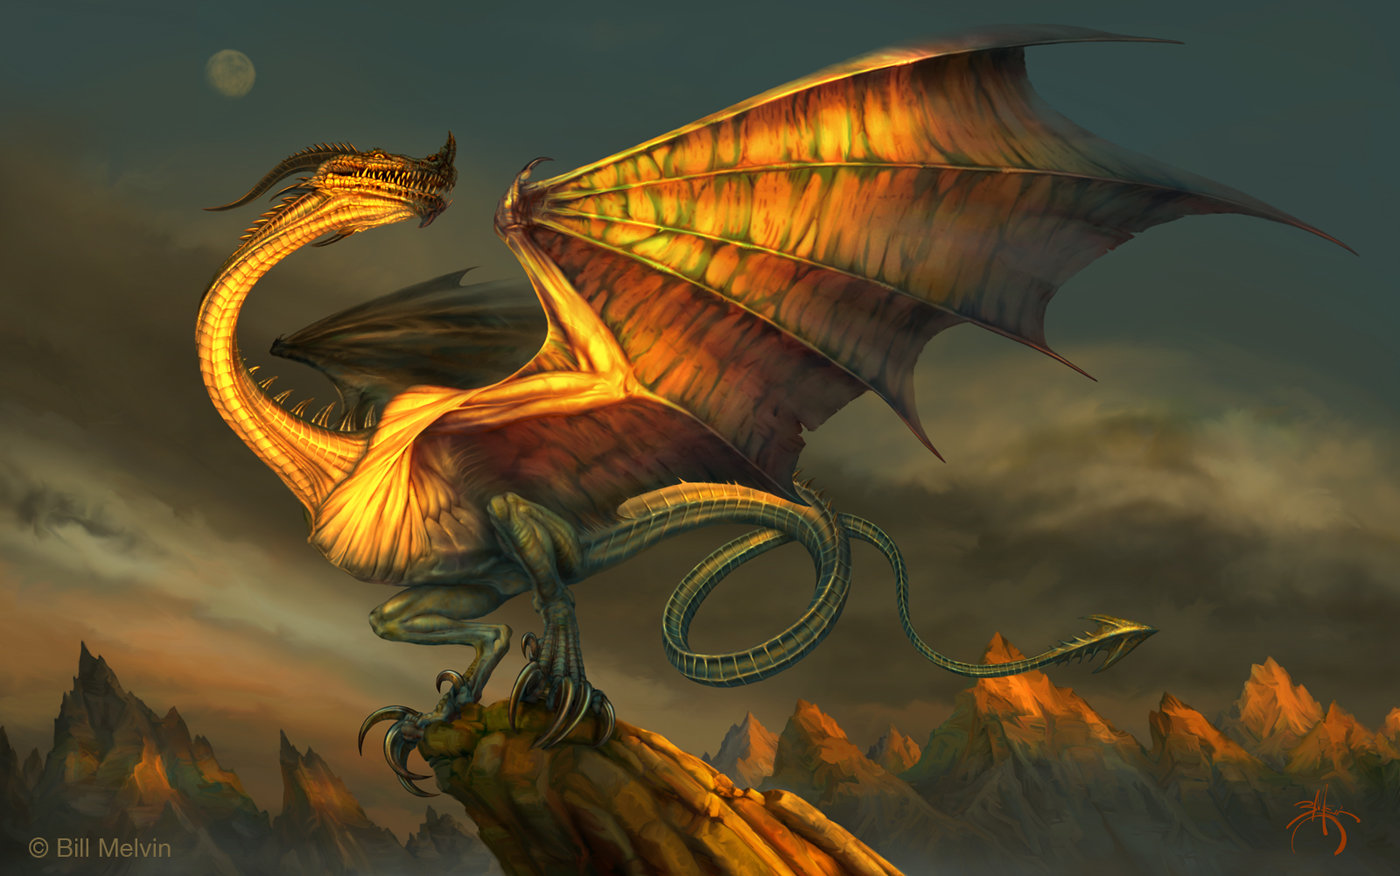 Виверна - дракон из средневековых европейских легенд